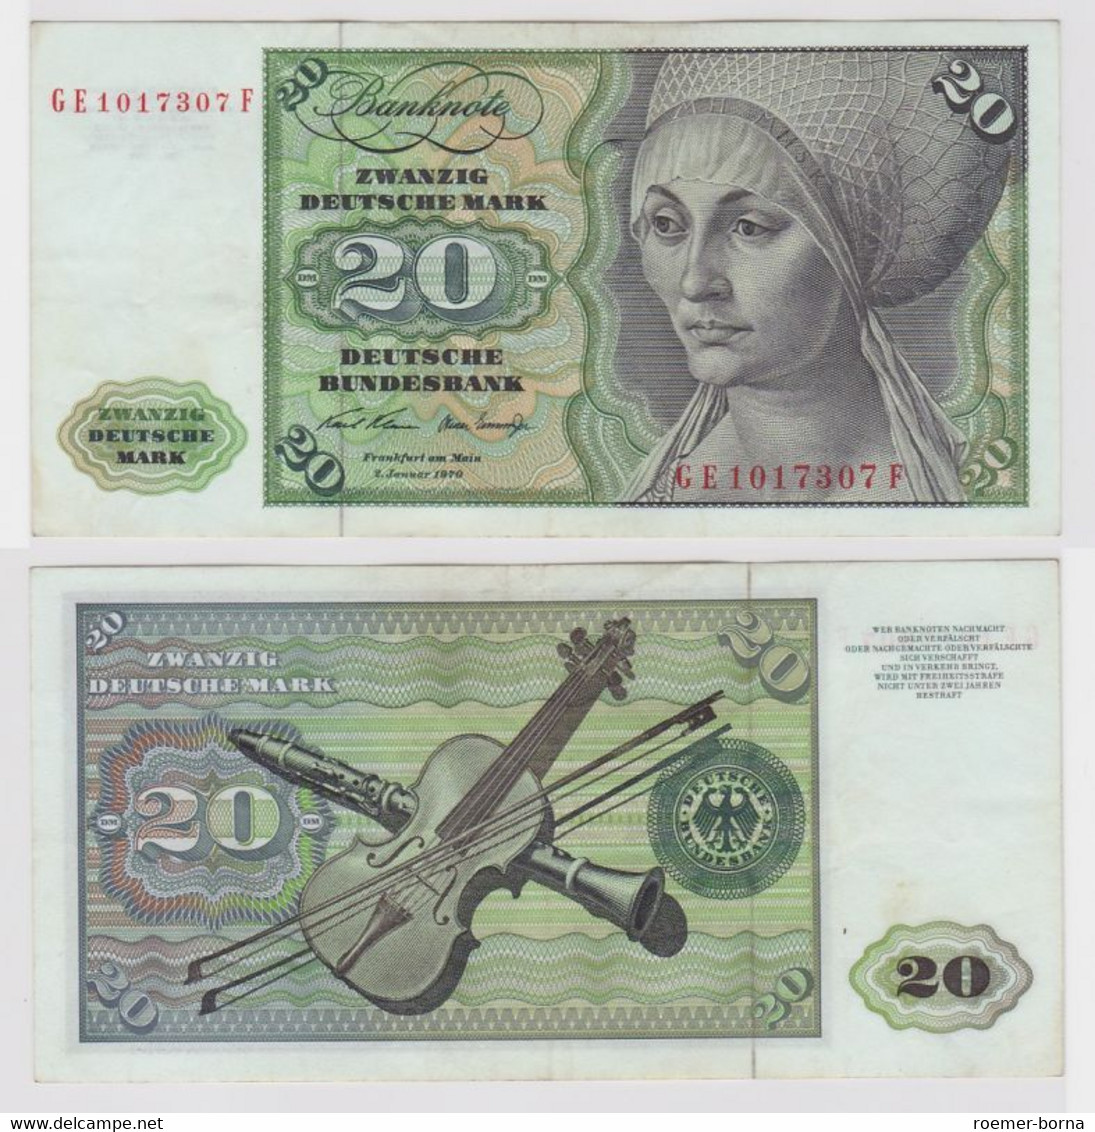 T148161 Banknote 20 DM Deutsche Mark Ro. 271b Schein 2.Jan. 1970 KN GE 1017307 F - 20 Deutsche Mark